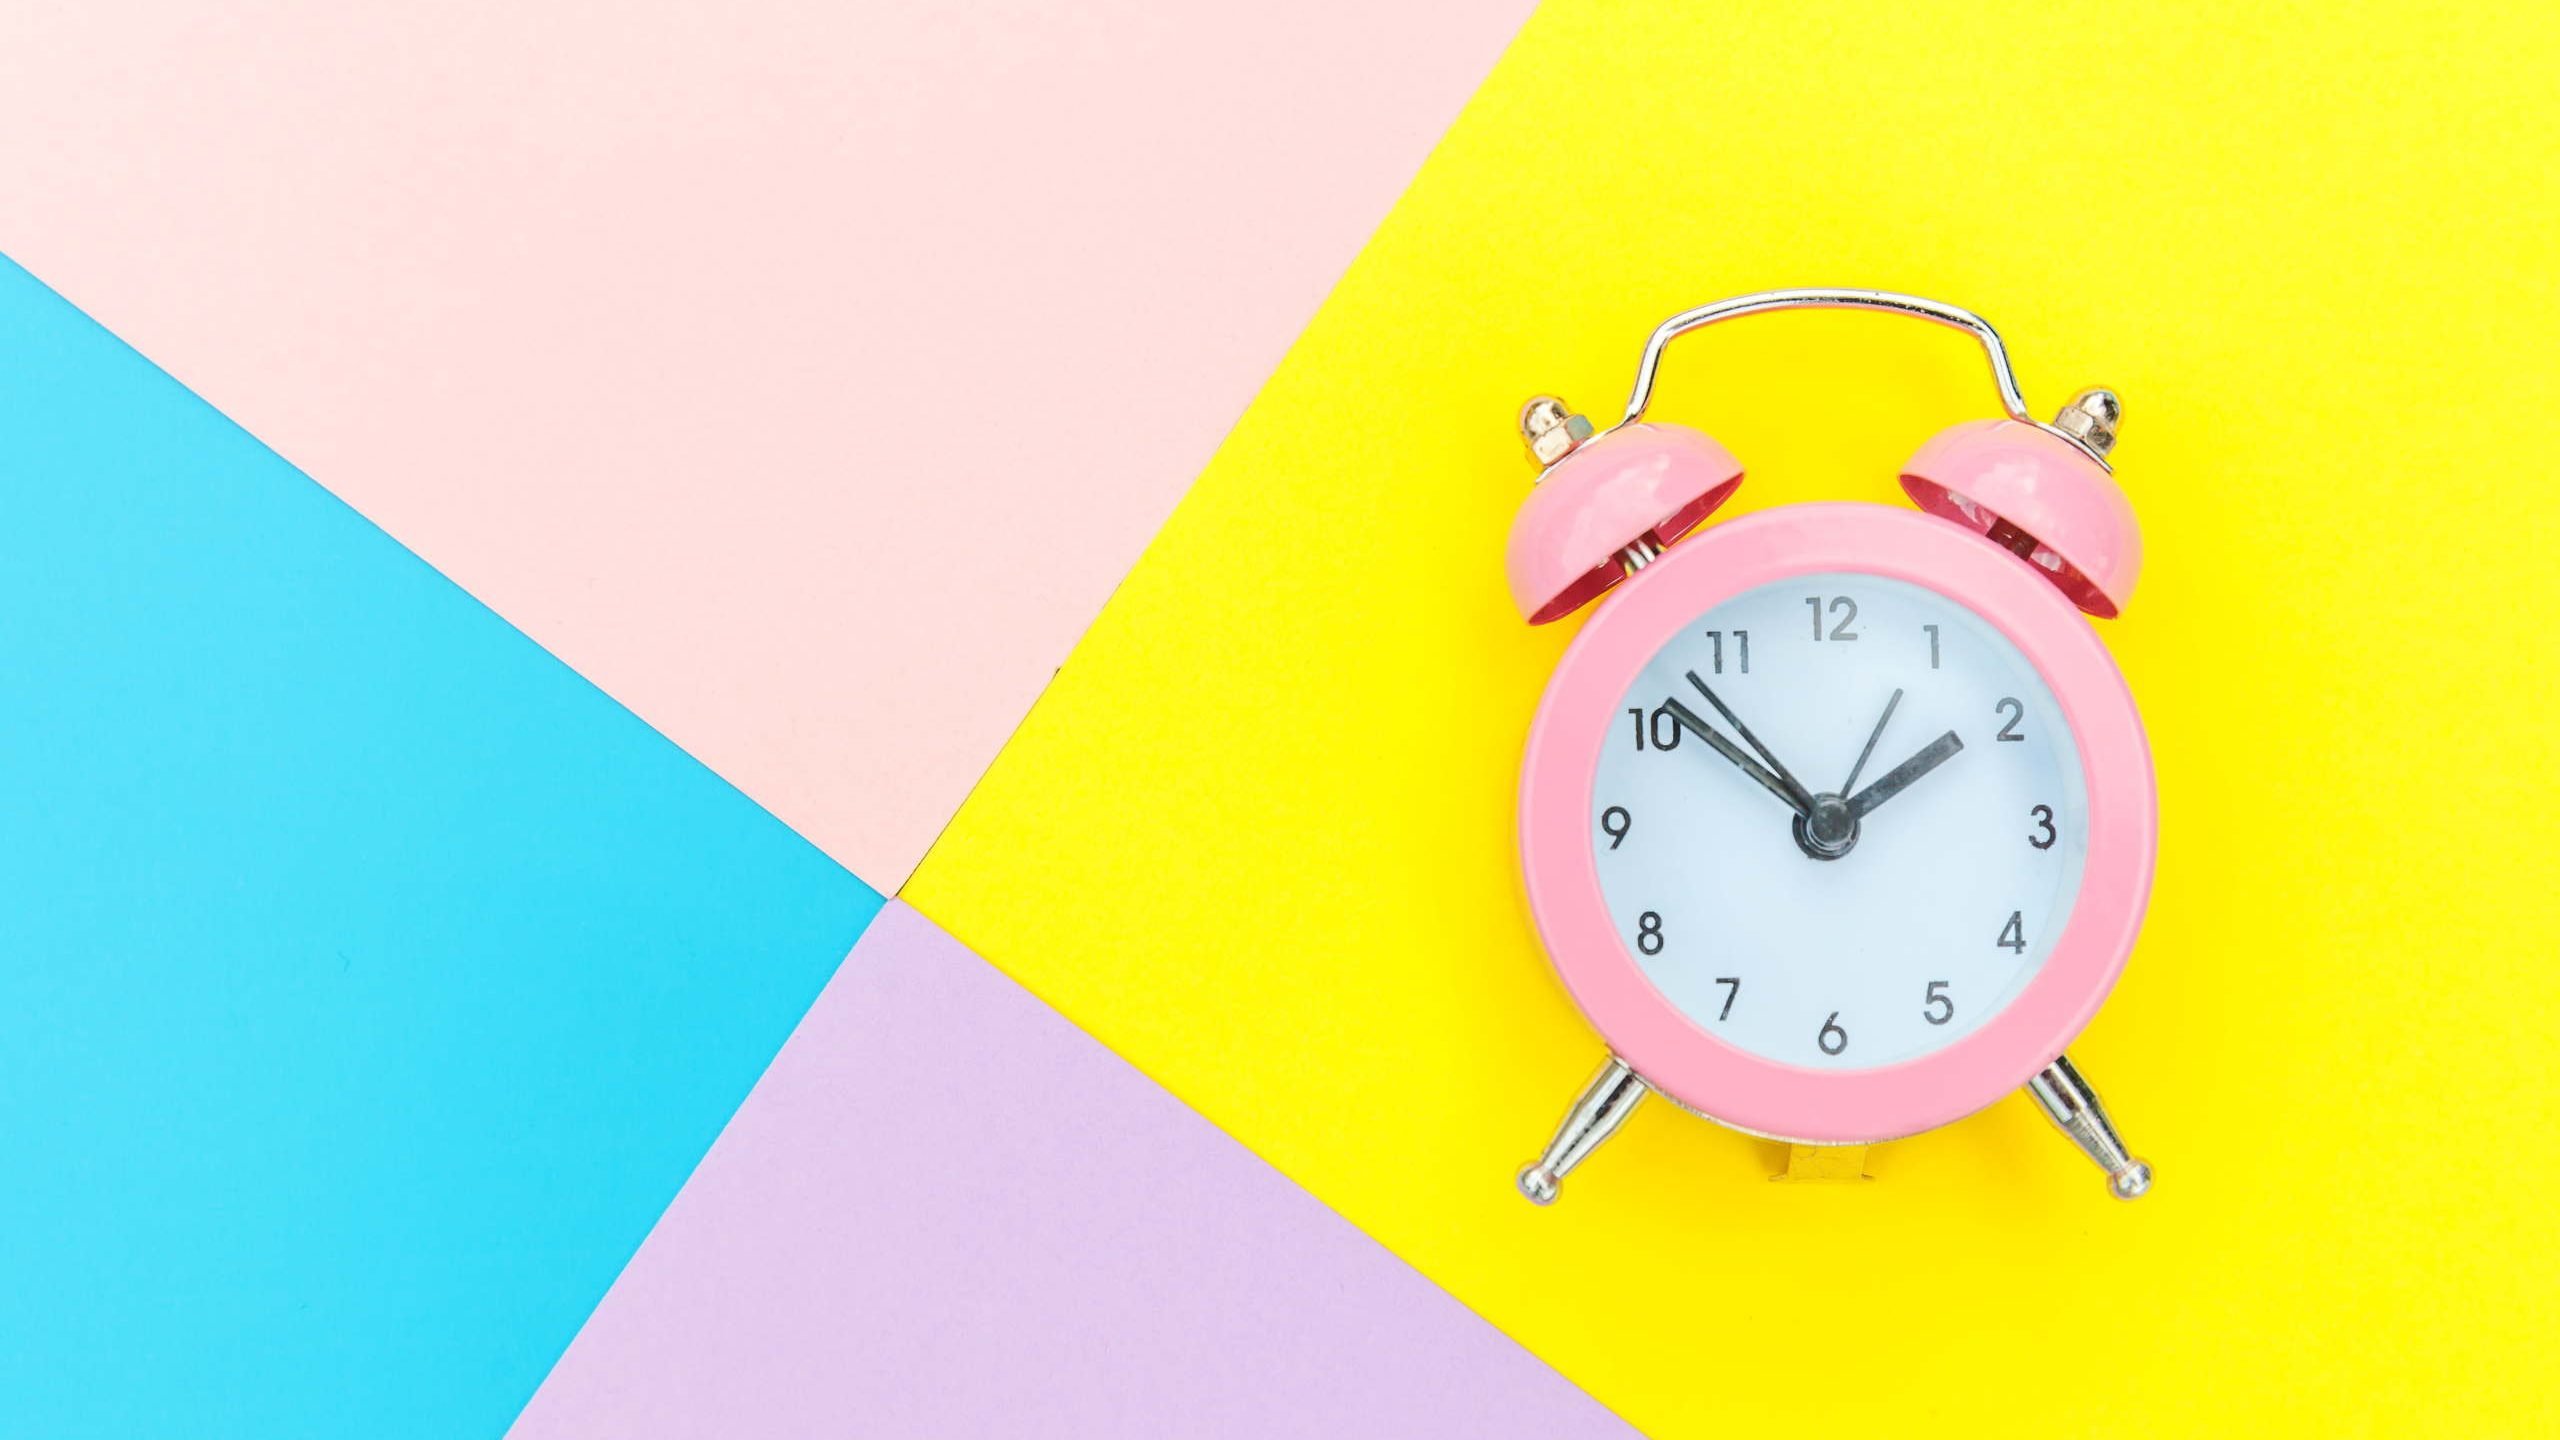 Cómo se dice la hora en inglés reloj rosa sobre fondo de colores